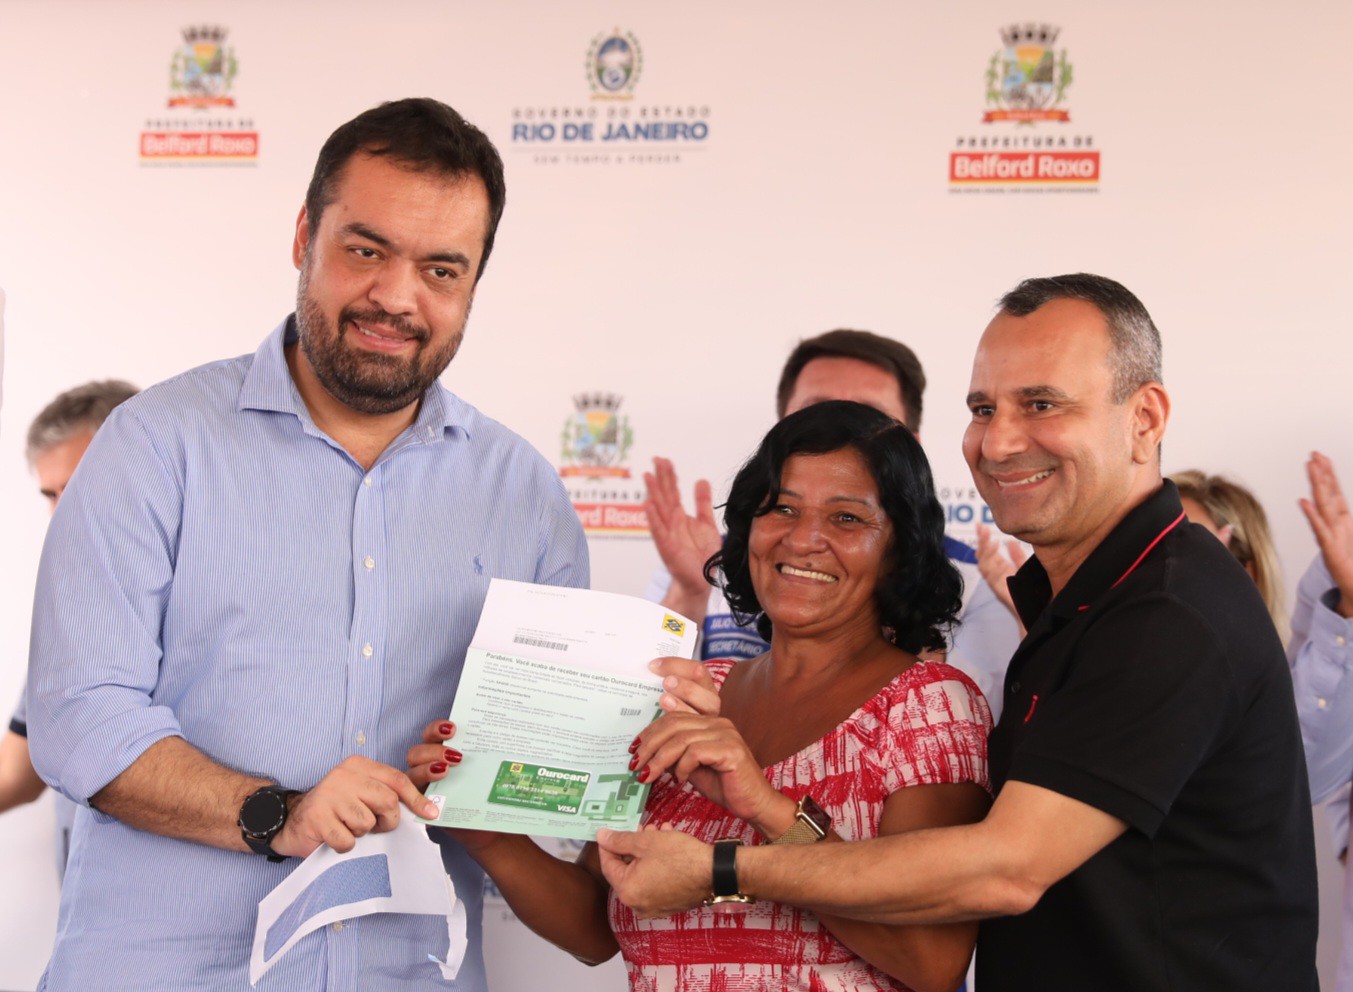 Famílias da Baixada Fluminense  recebem cartões do programa Recomeçar